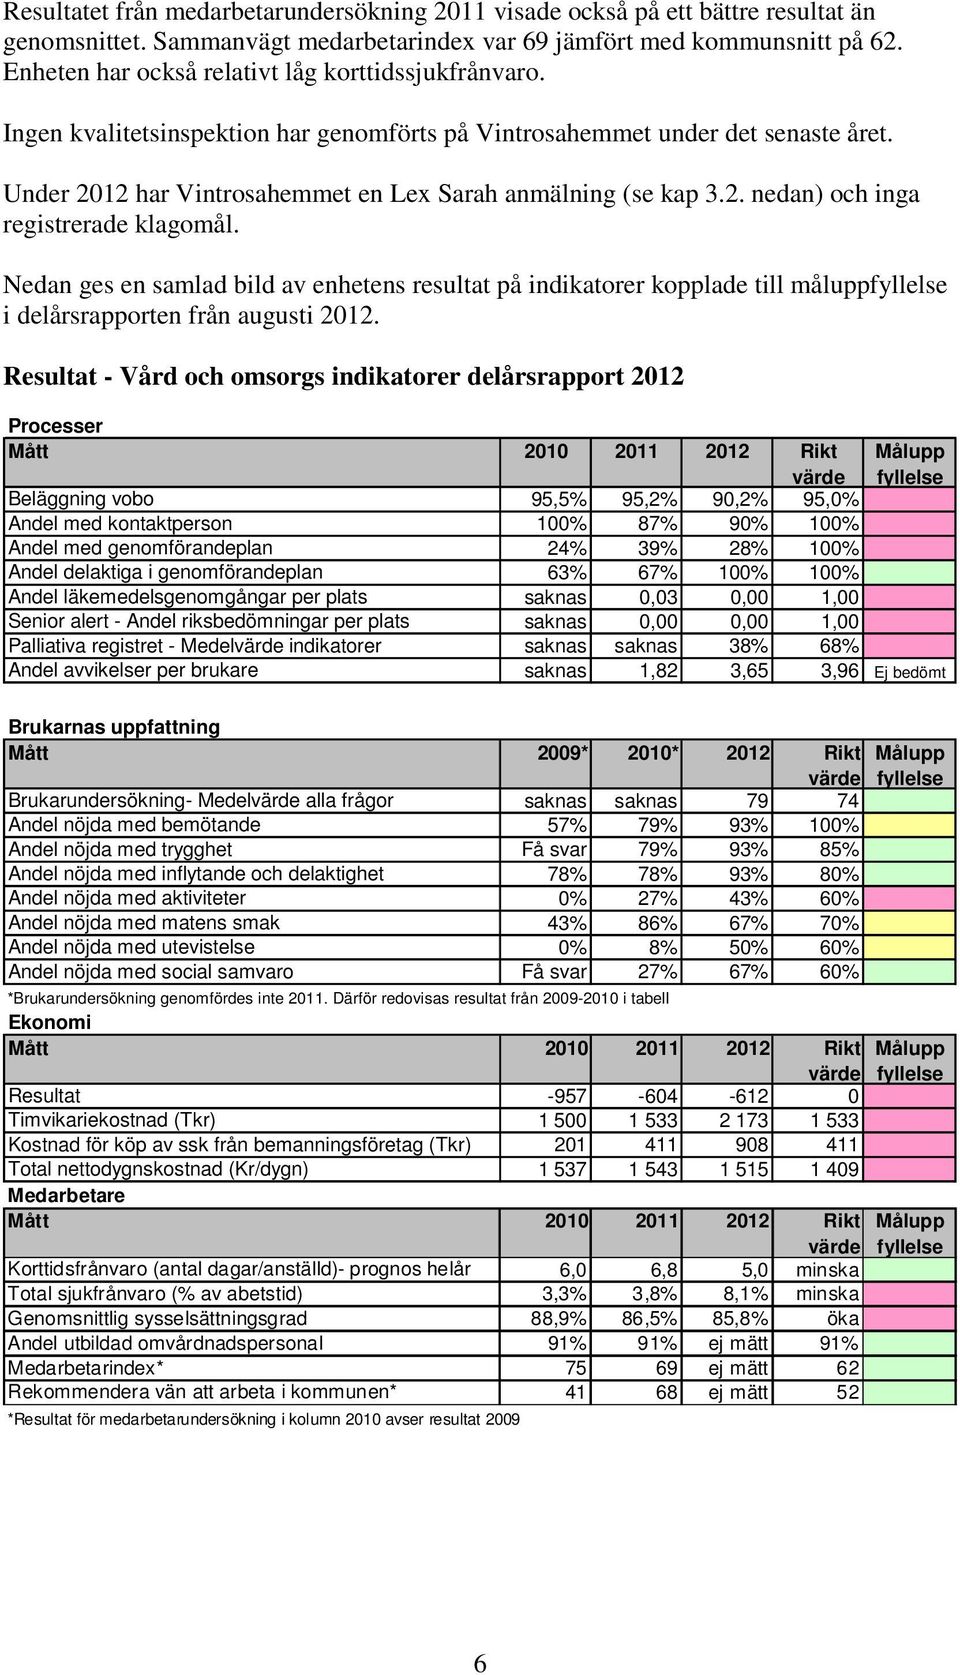 Nedan ges en samlad bild av enhetens resultat på indikatorer kopplade till måluppfyllelse i delårsrapporten från augusti 2012.